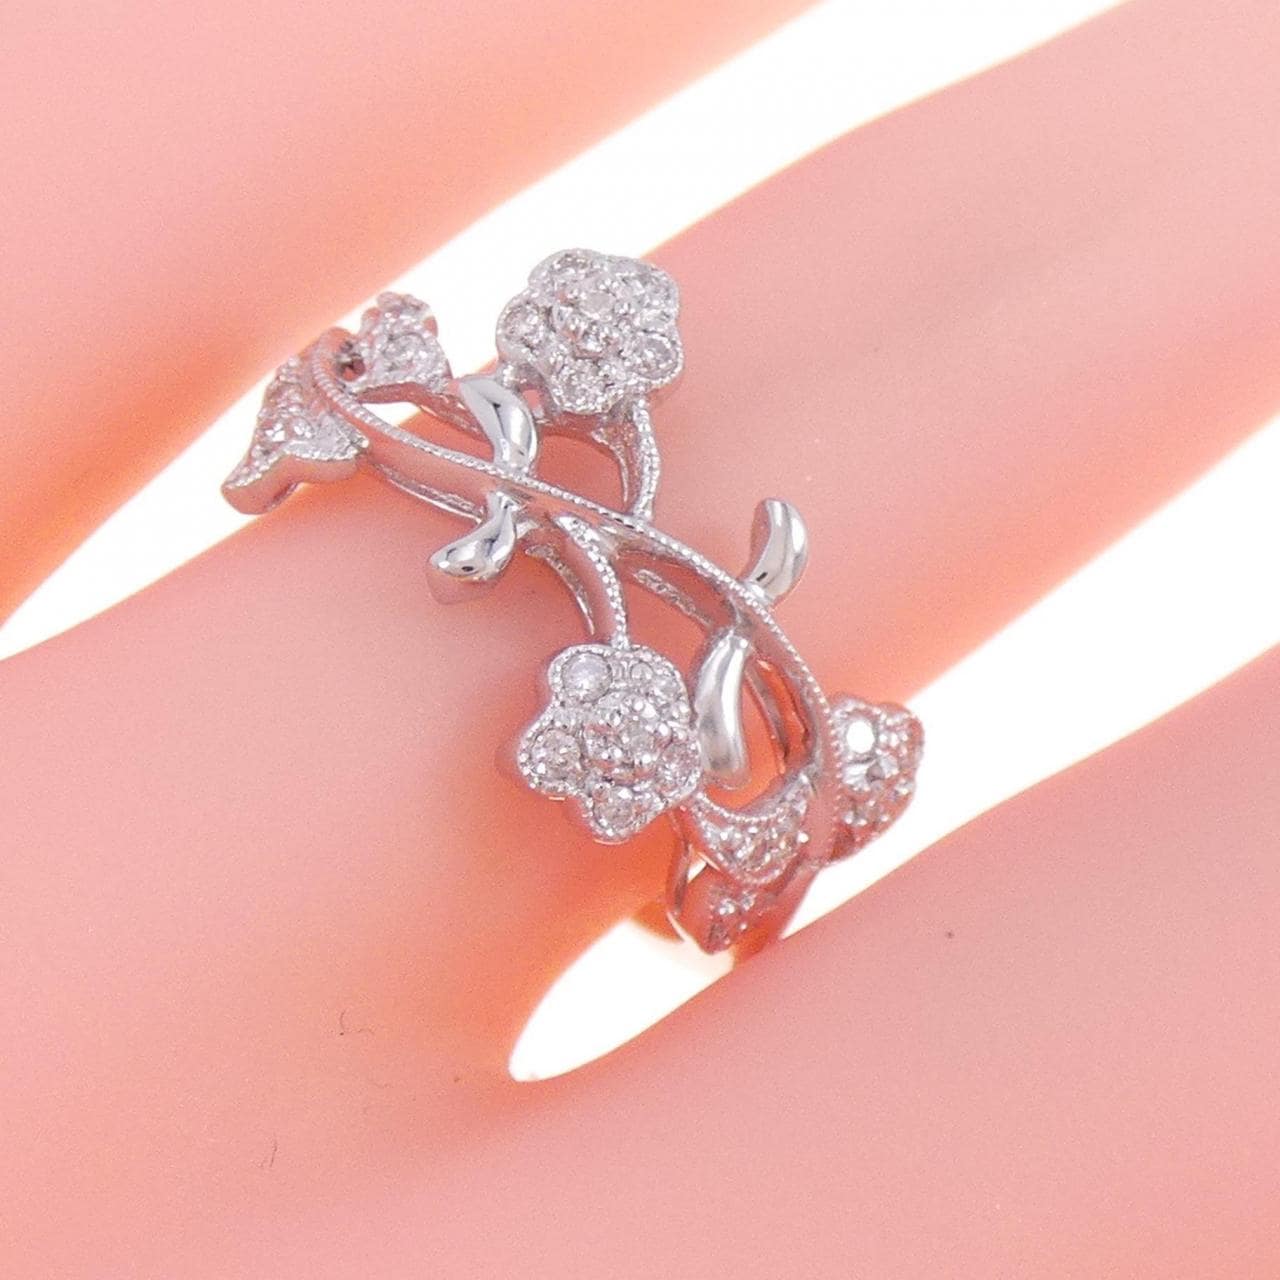 K18WG flower Diamond ring 0.15CT